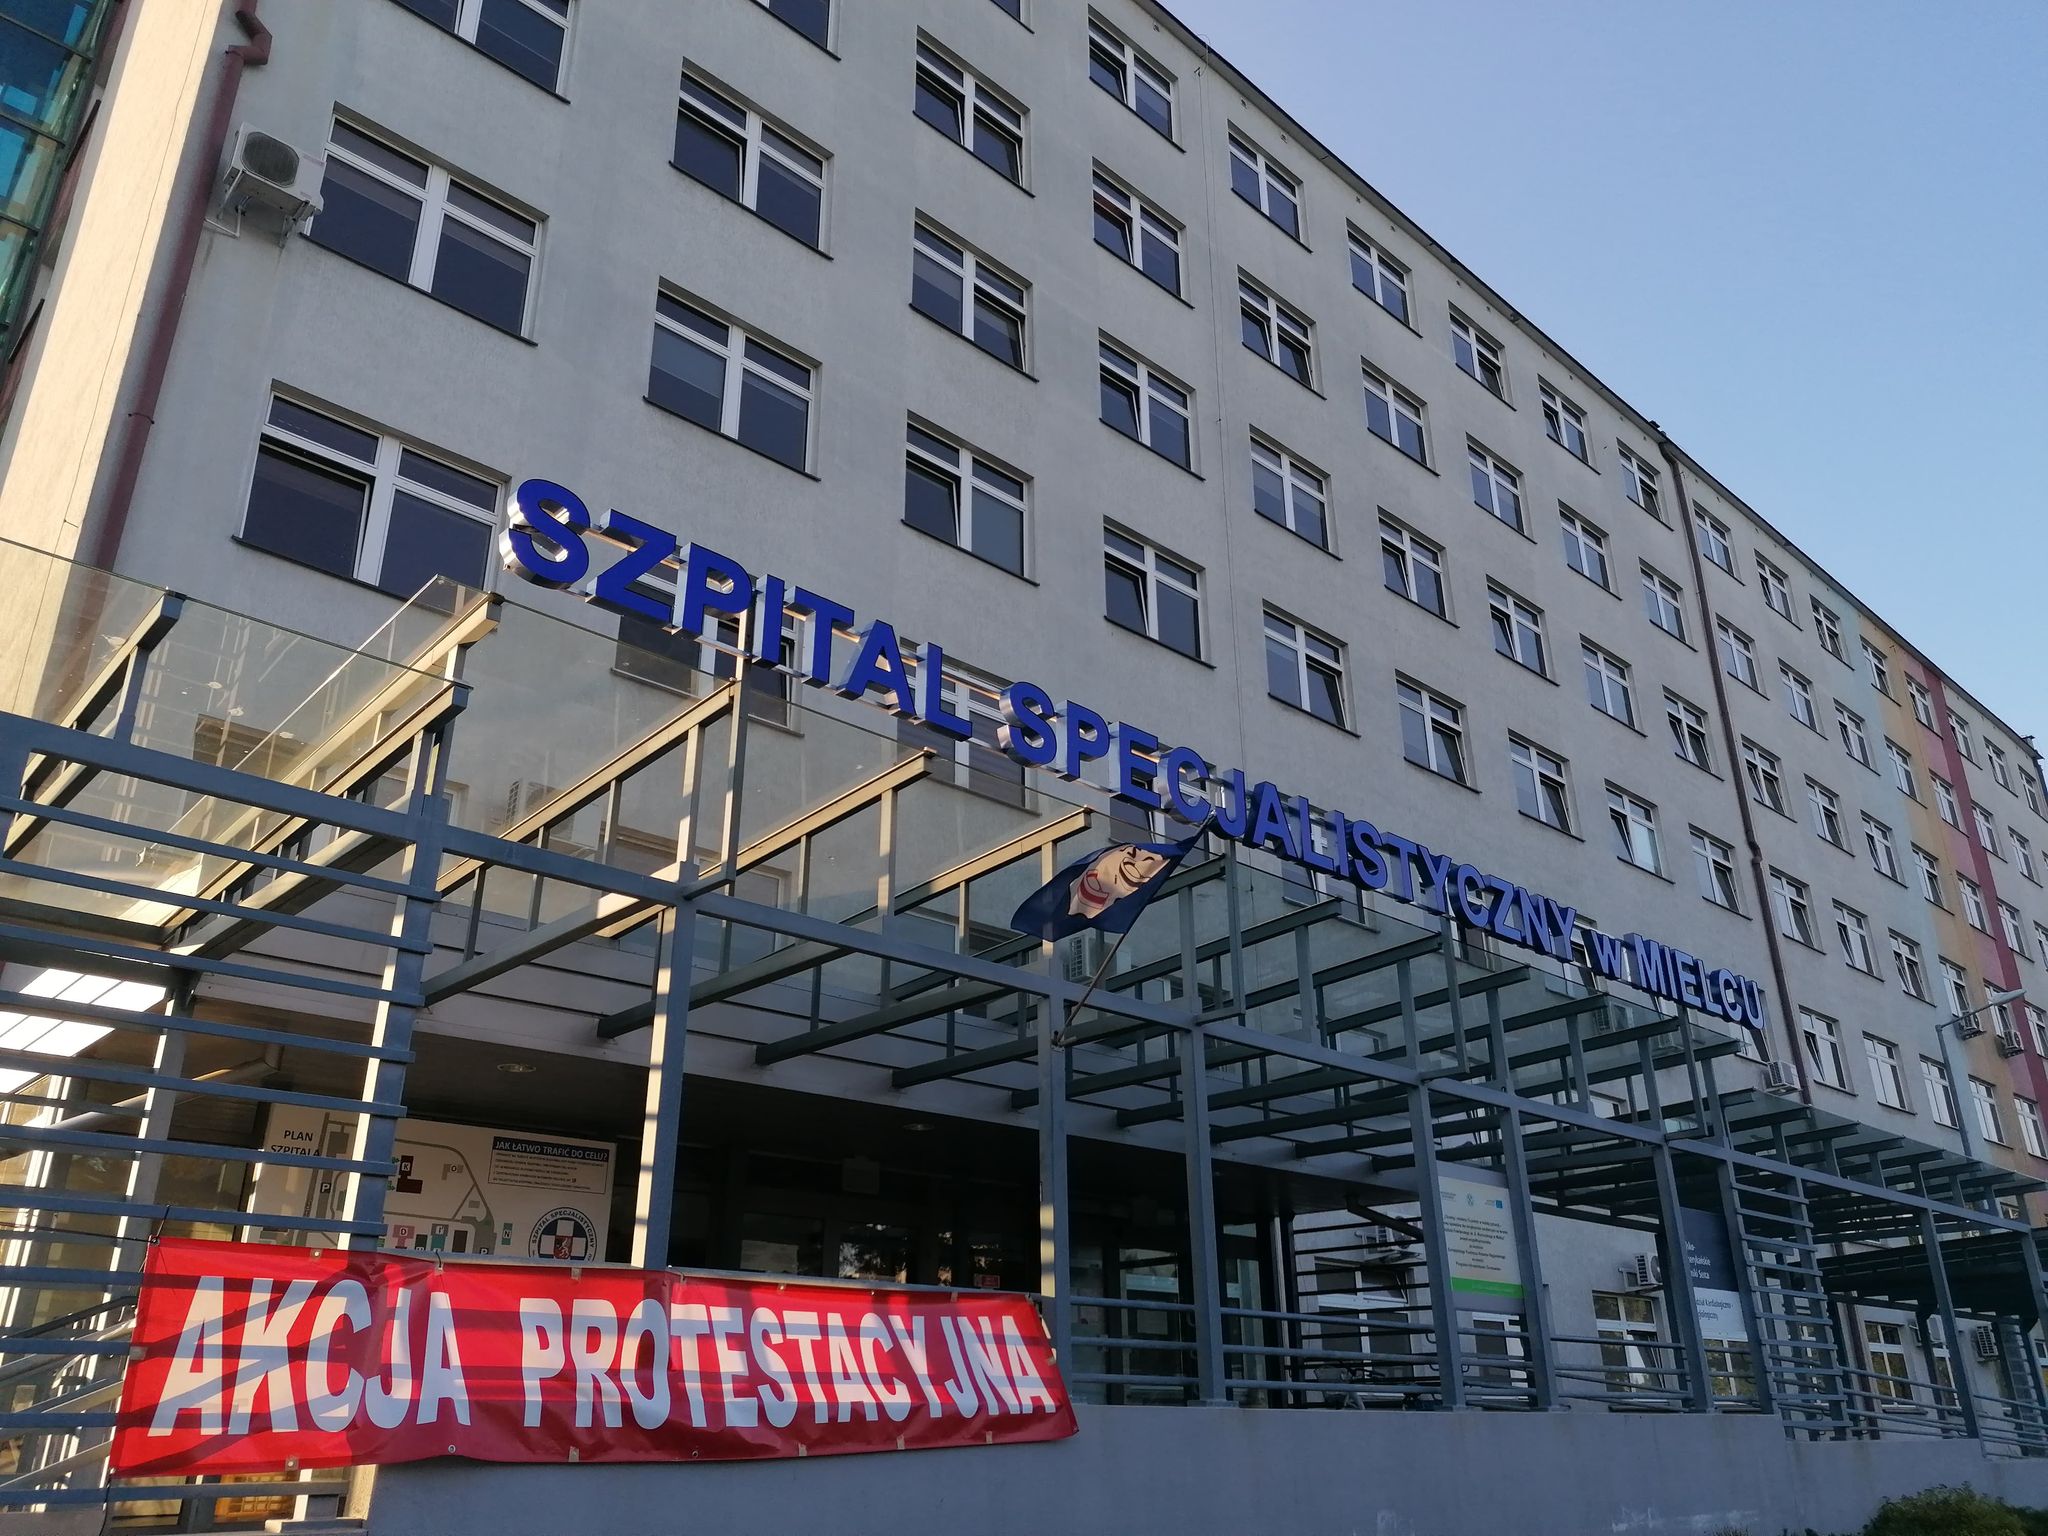 Pielęgniarki protestują w całym regionie! W mieleckim szpitalu flagi na znak solidarności - Zdjęcie główne